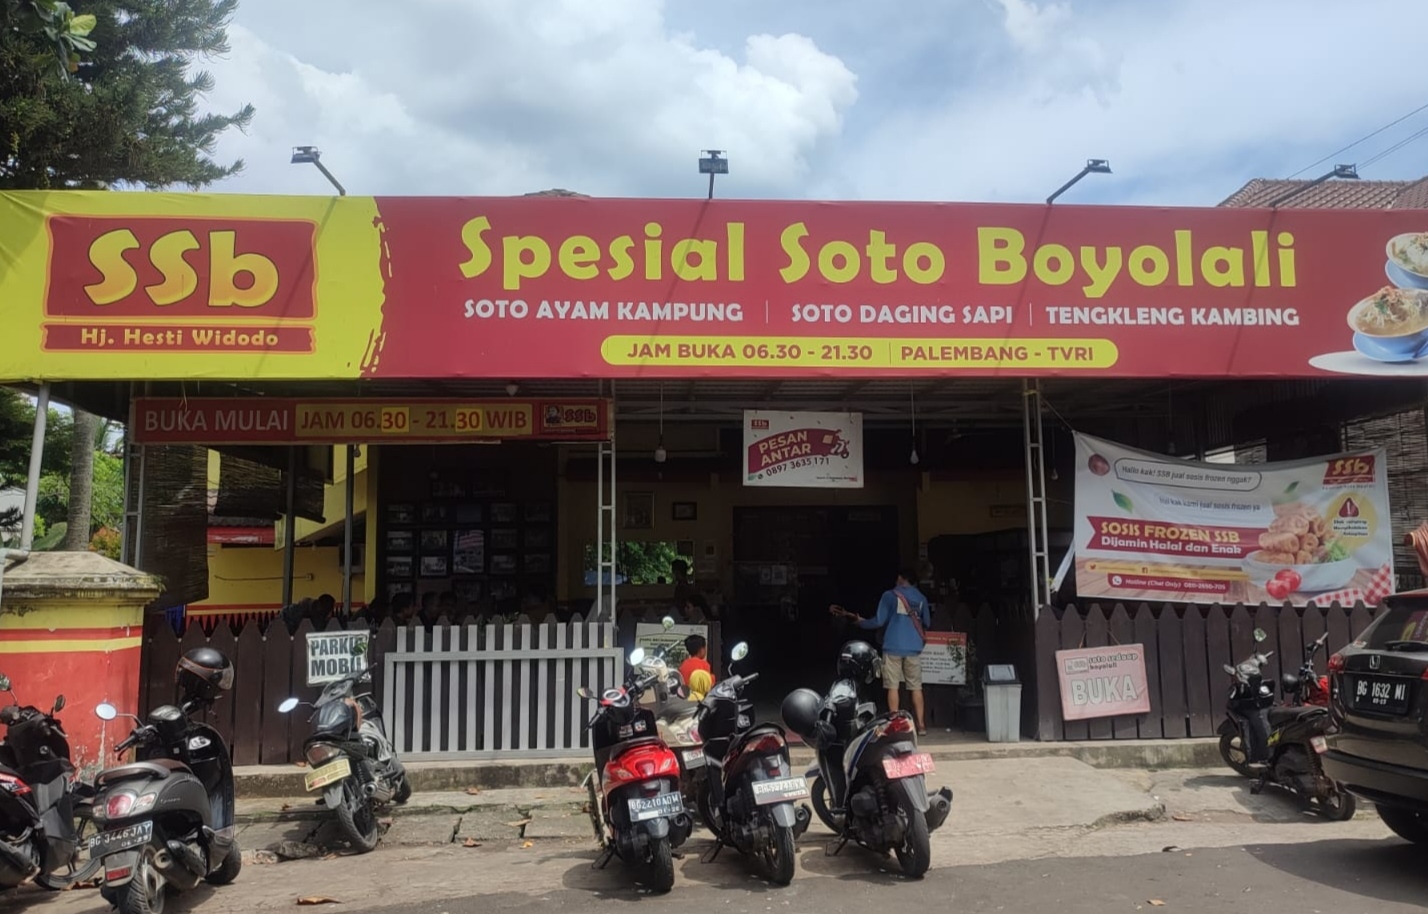 Ingin Makan Soto Enak dan Murah di Palembang? Spesial Soto Boyolali Menunya Mulai Rp10.000